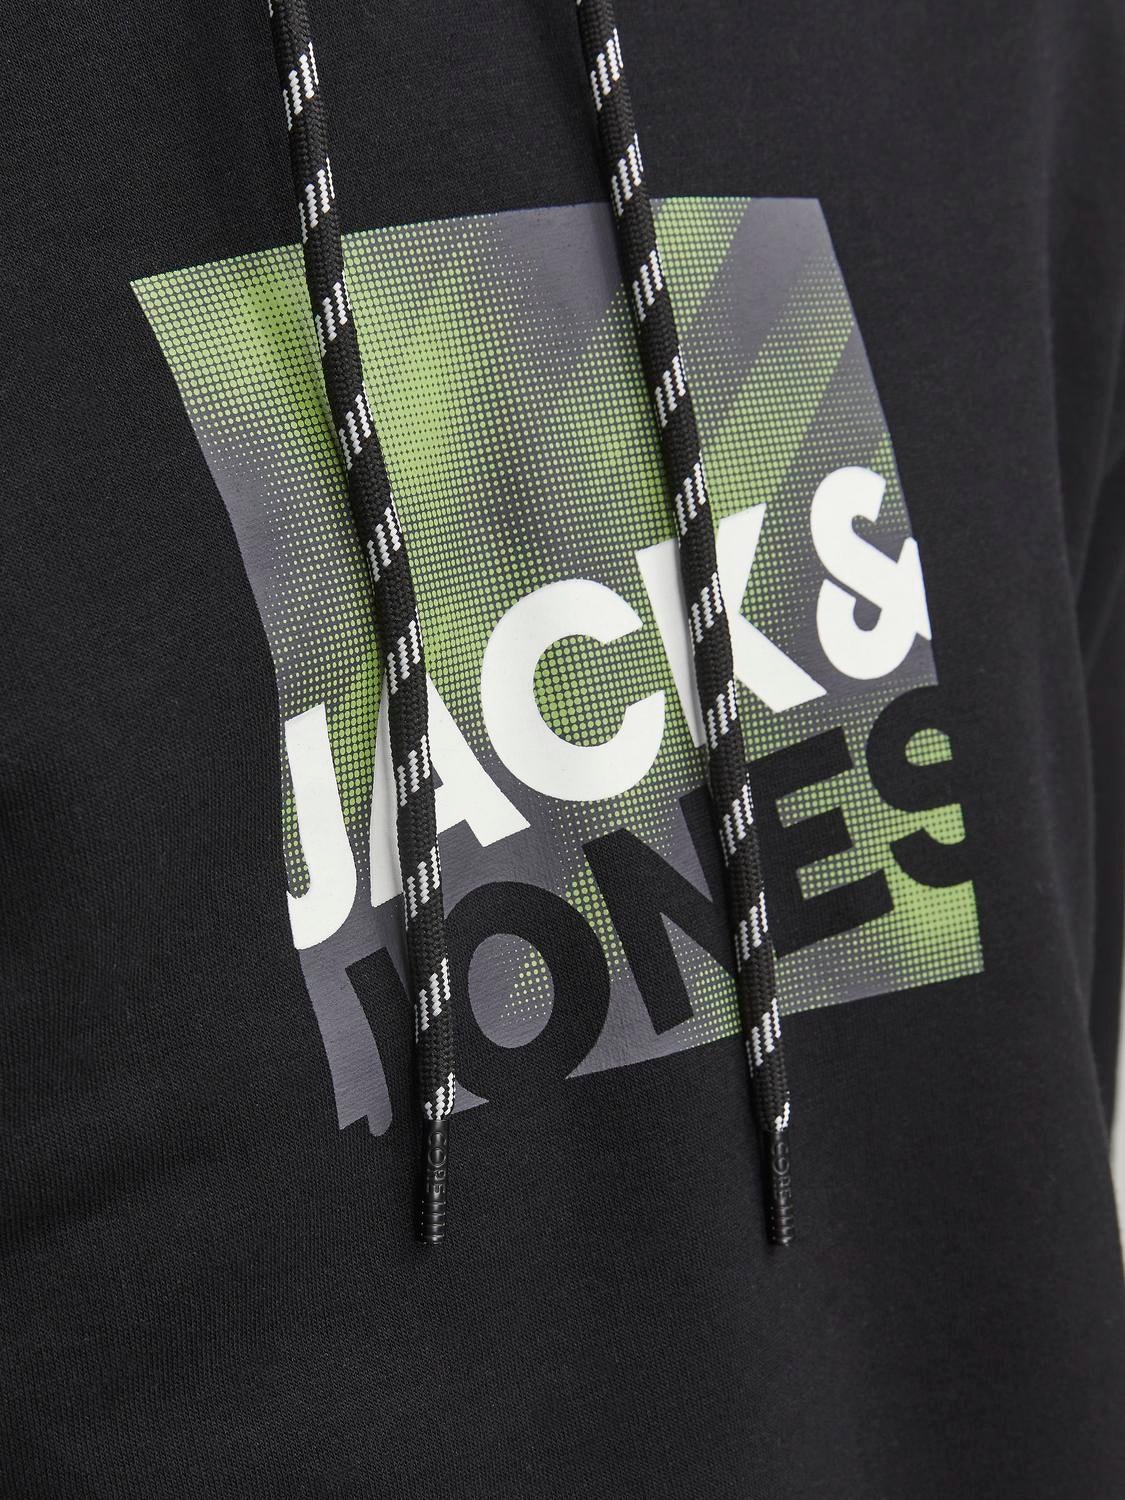 Jack & Jones Logo Hættetrøje -Black - 12246994